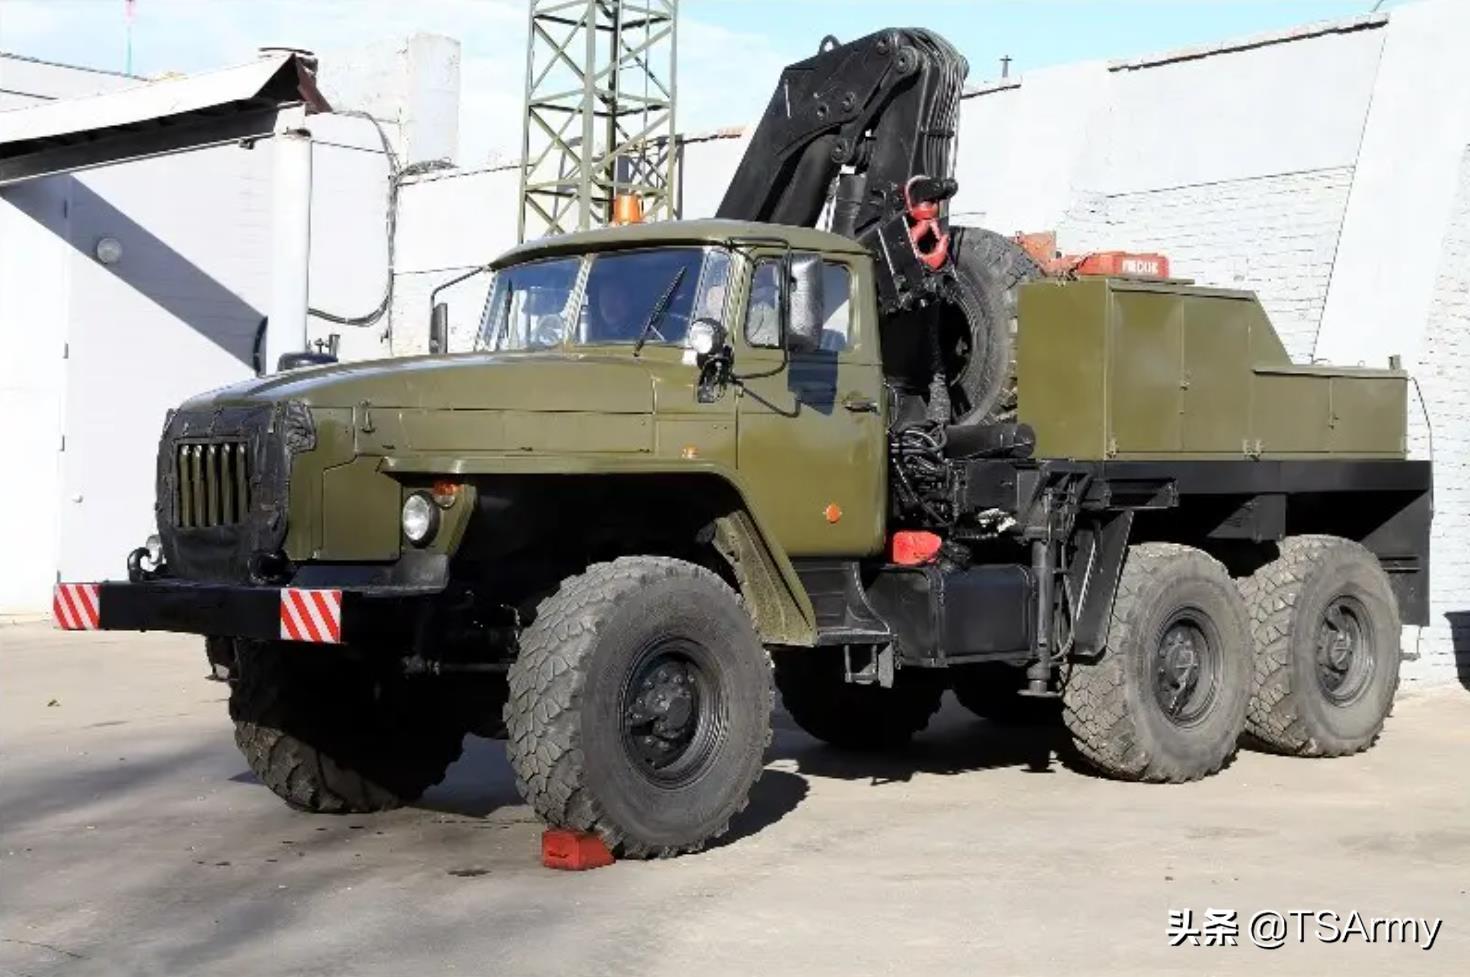 俄罗斯14大现役军用车辆总览,都带着粗犷的外形